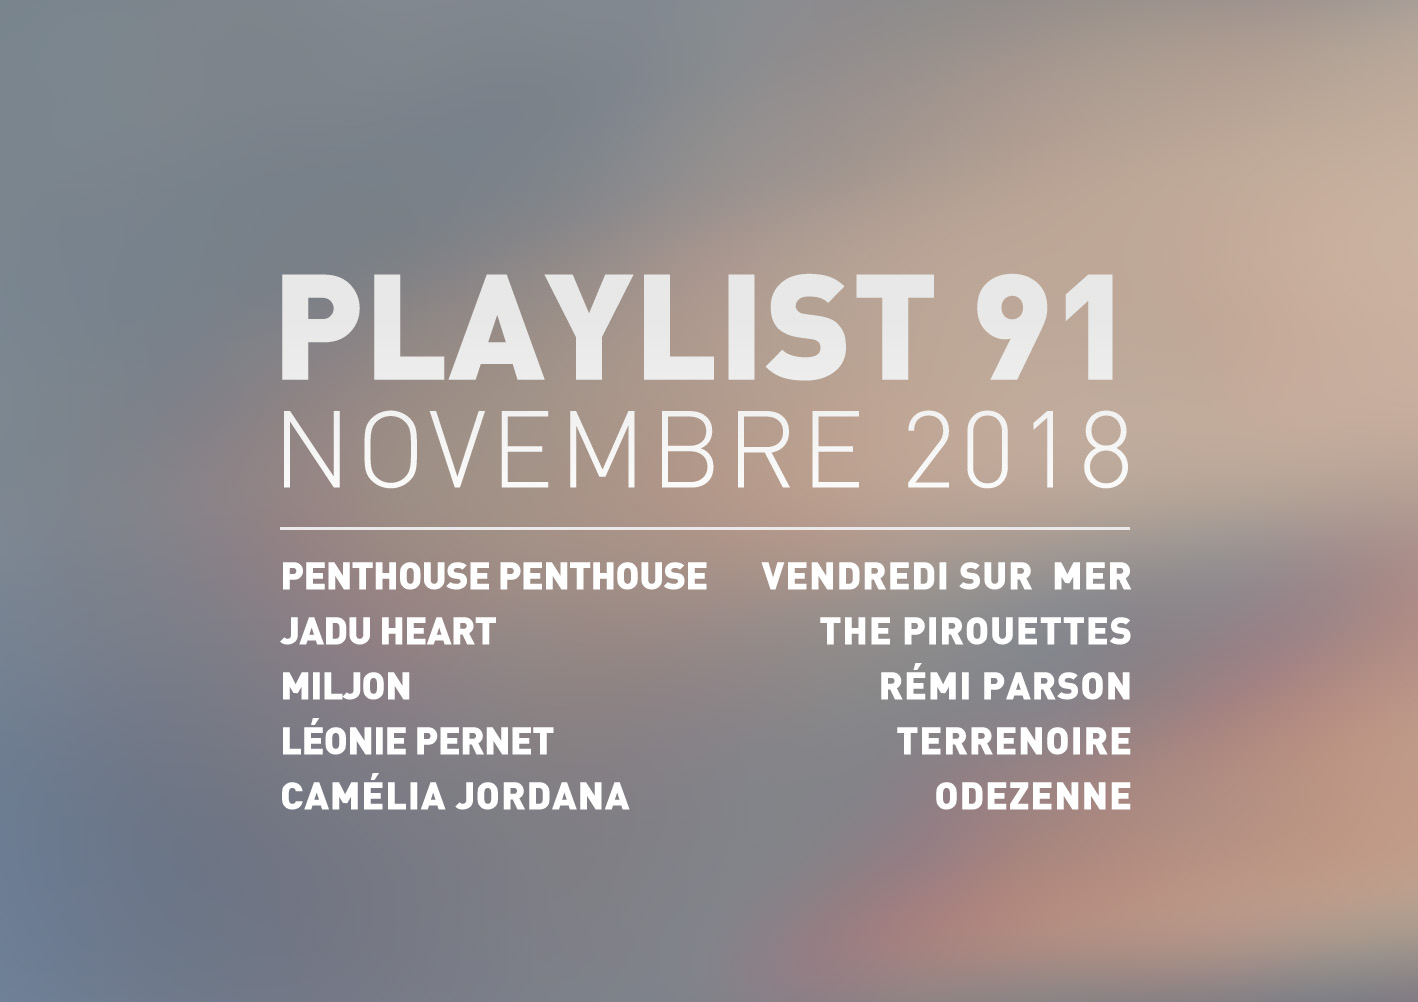 Playlist 91 : Miljon, Léonie Pernet, Rémi Parson, Odezenne, etc